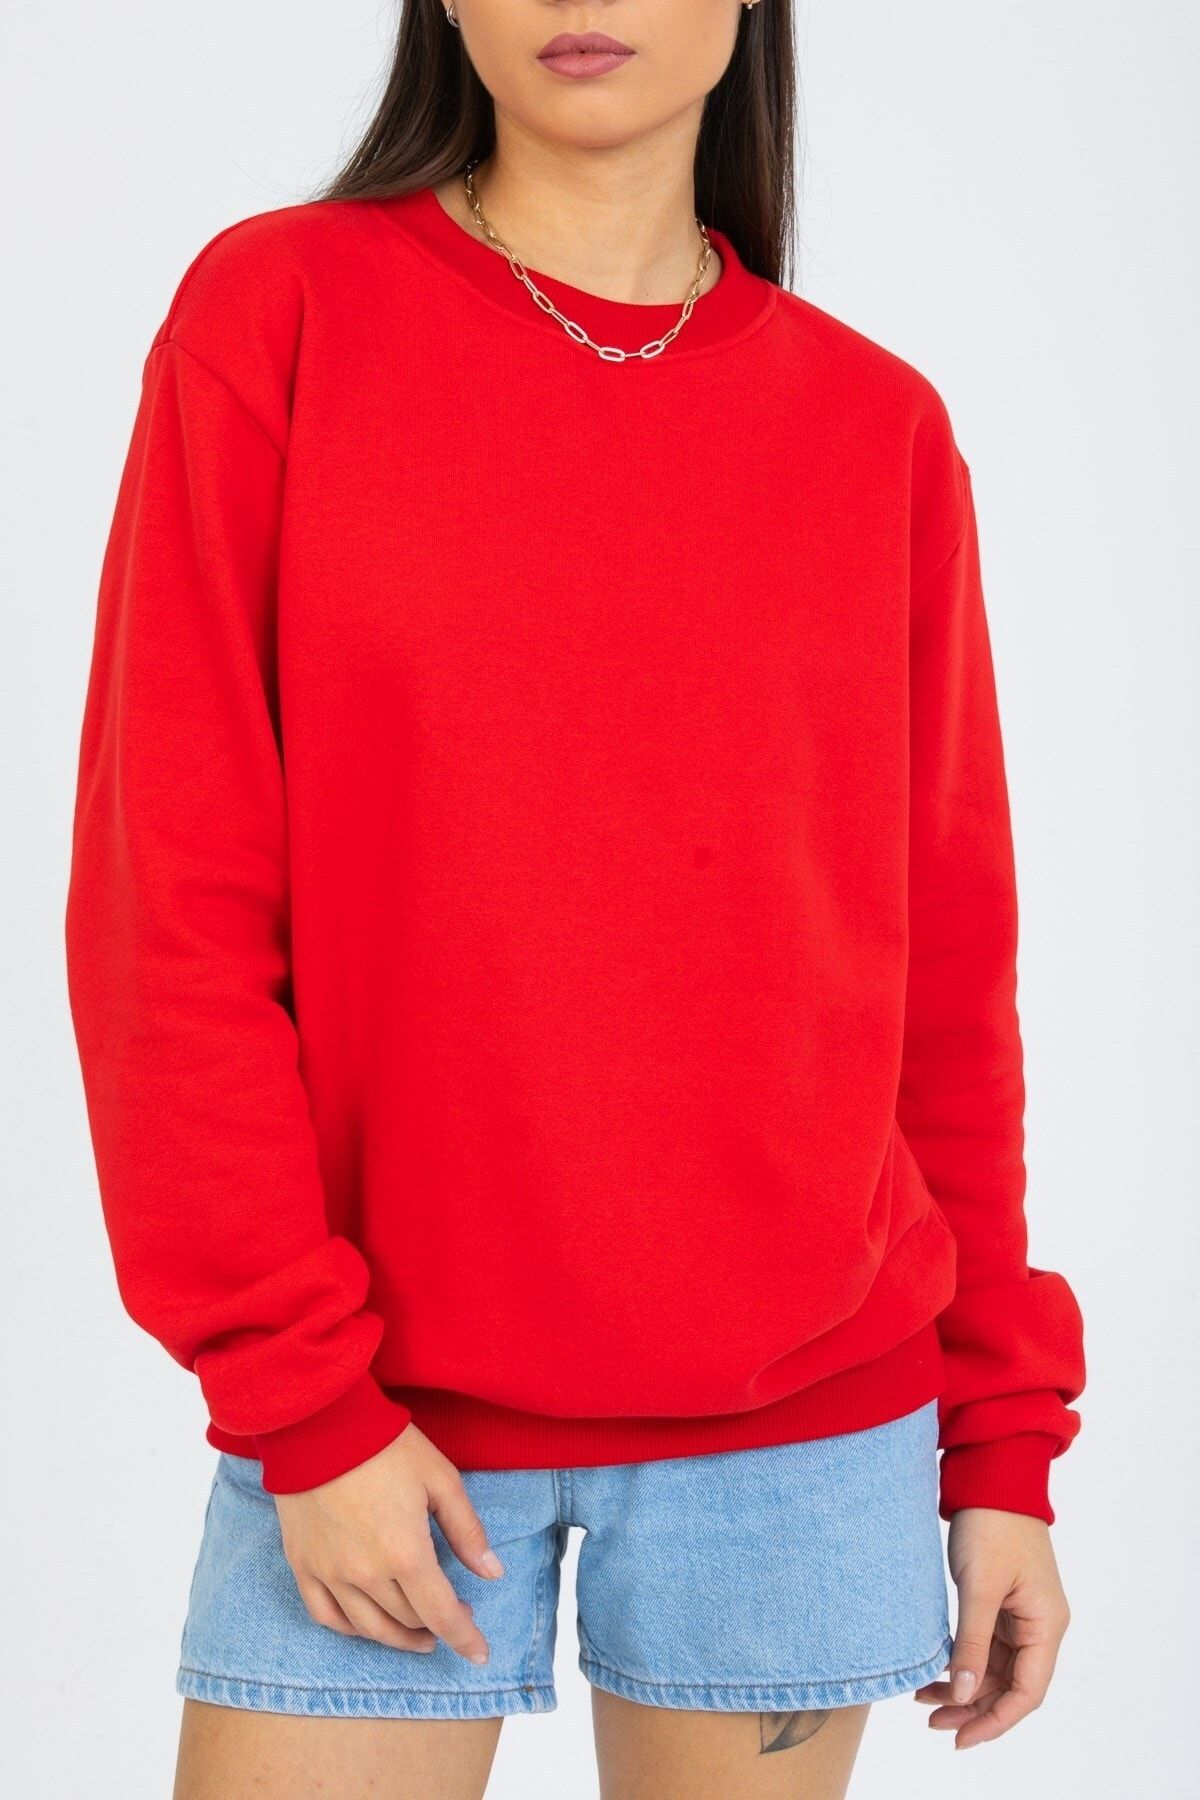 Deafox Canlı Kırmızı Basic Kadın Sweatshirt